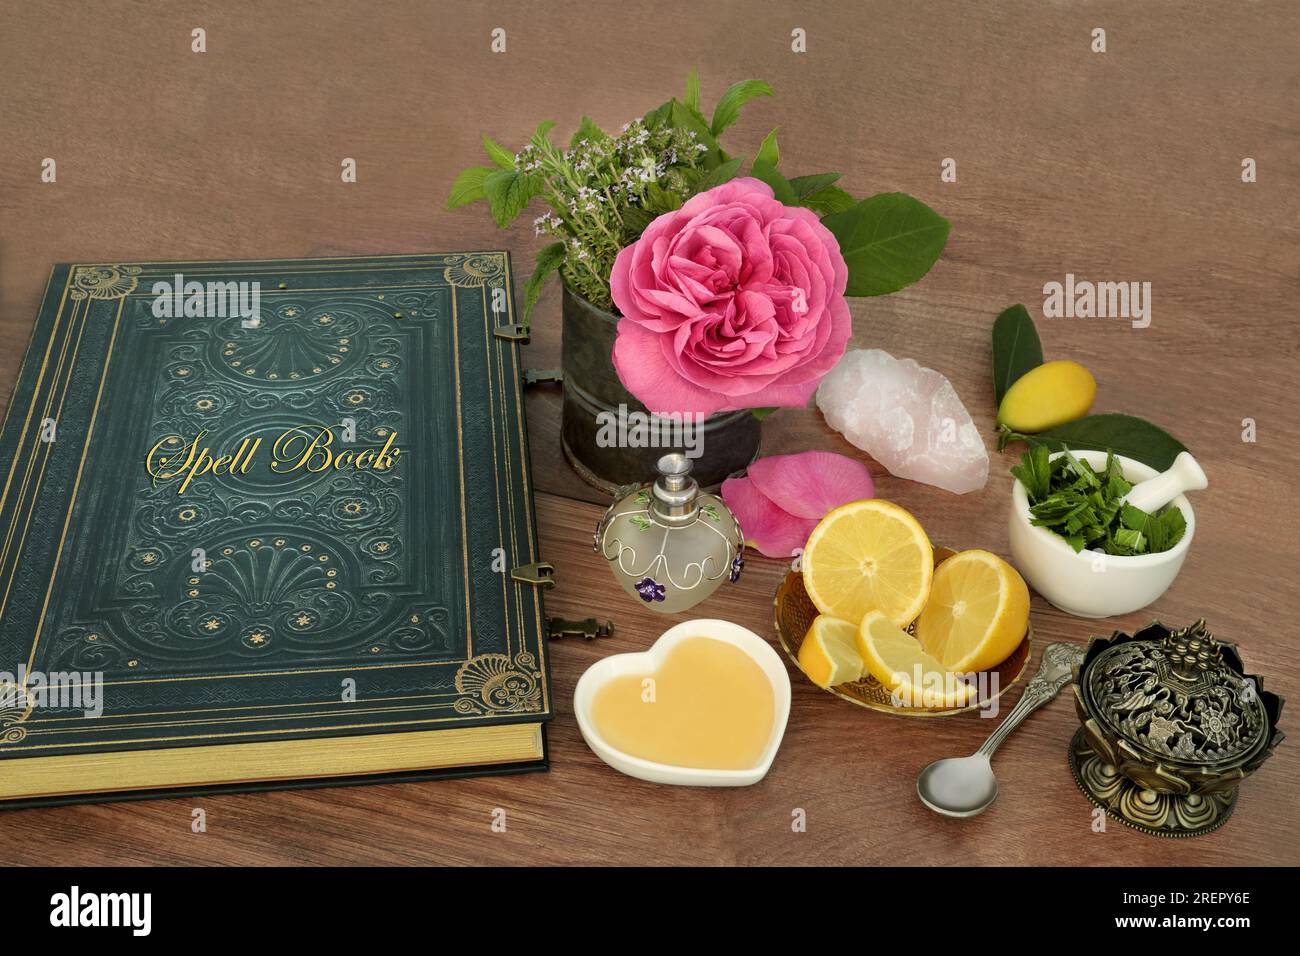 Preparazione di pozioni d'amore per incantesimi magici con ingredienti di fiore di rosa, cristallo di quarzo, timo, menta, limone e miele con un vecchio libro di incantesimi. Foto Stock